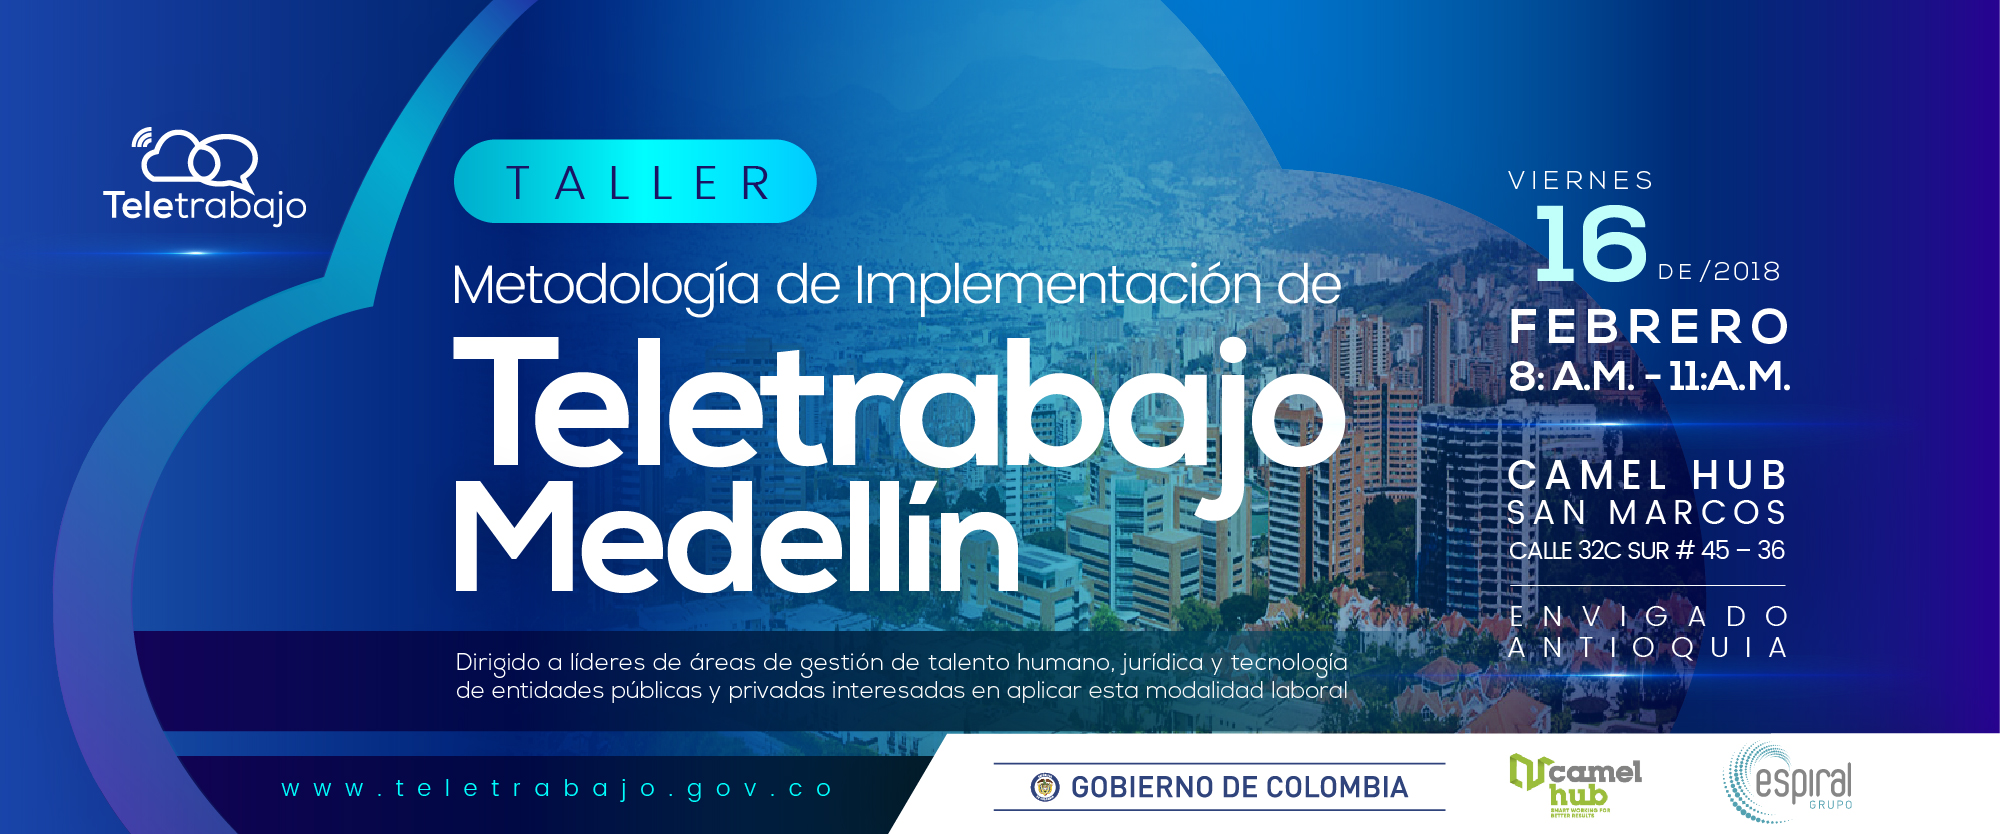 Taller Metodología e implementación Teletrabajo en empresas en Antioquia